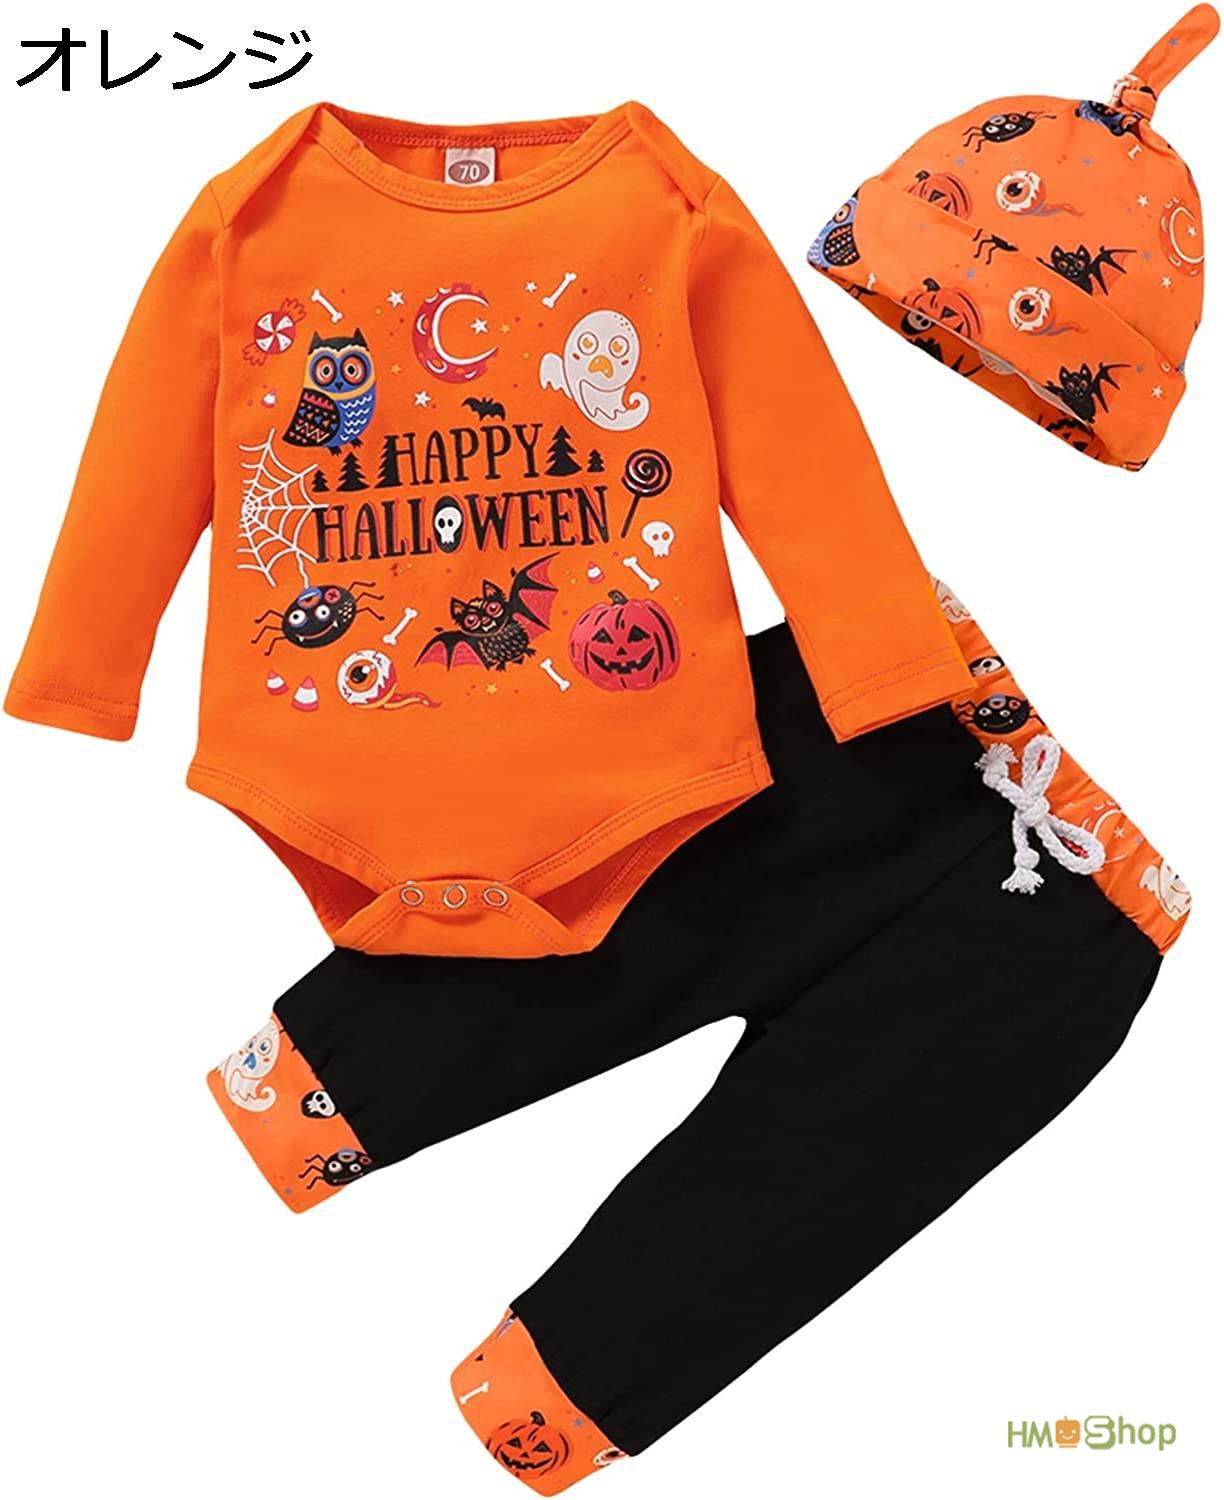 ハロウィン かぼちゃ ベビー服 ハロウィン コスプレ 子供 ベビー服 衣装 赤ちゃん服 女の子 男の...